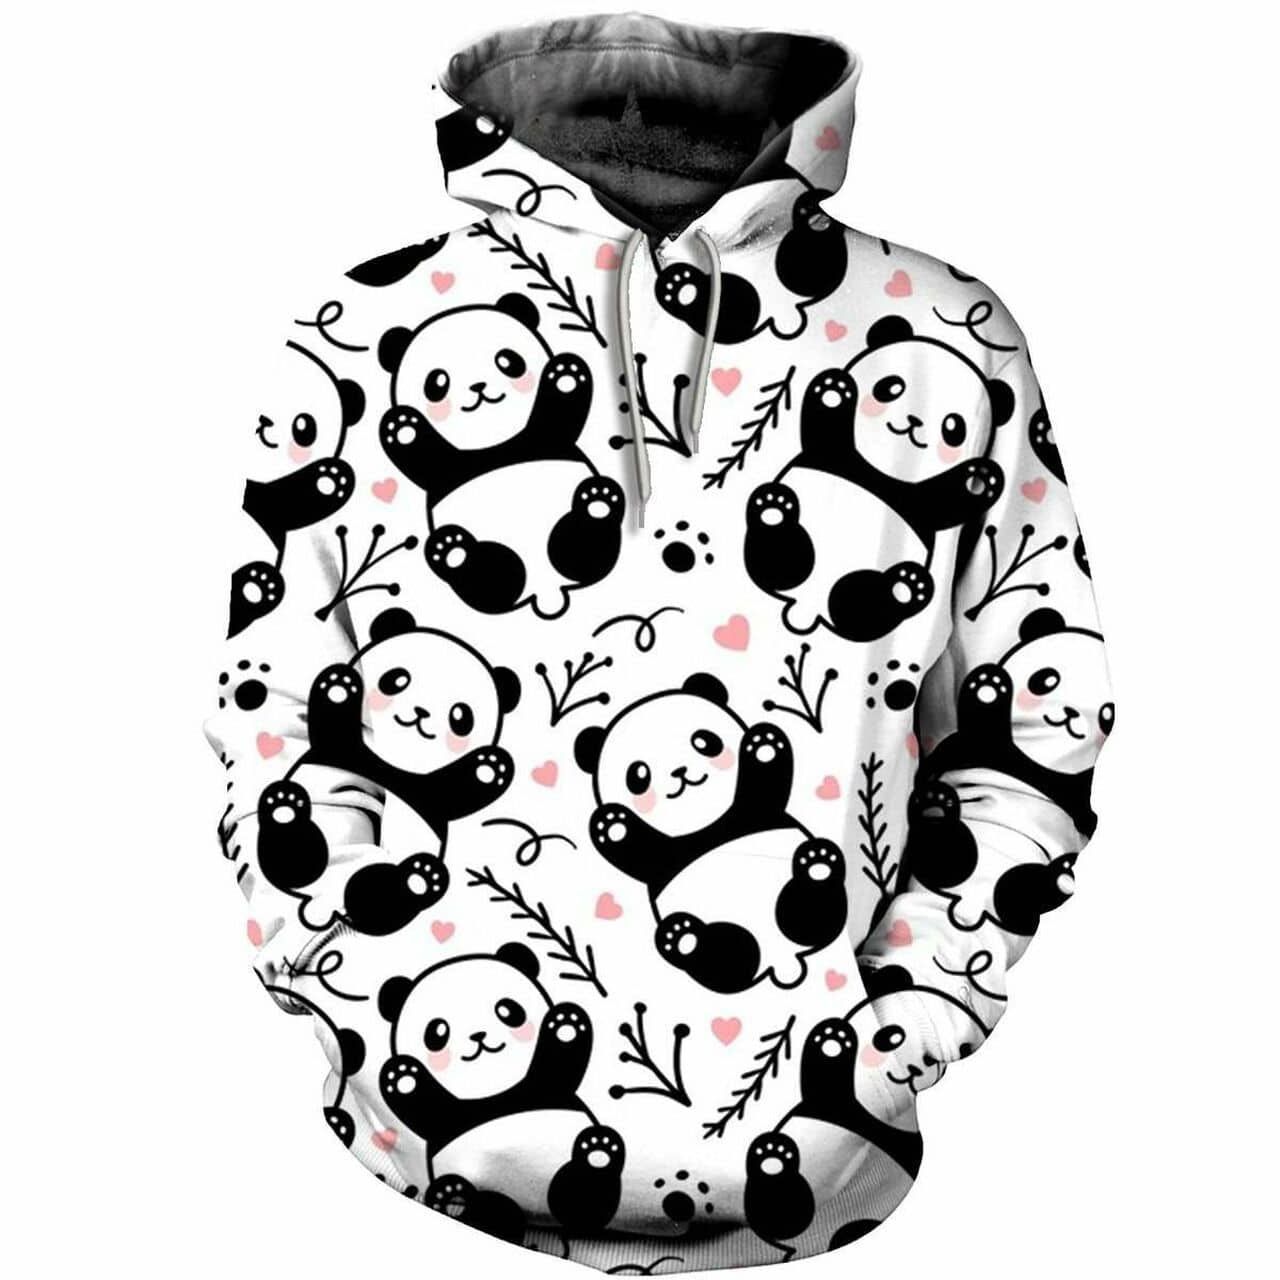 Cutie Panda Hoodie 3D All Over Print PAN3HD0010